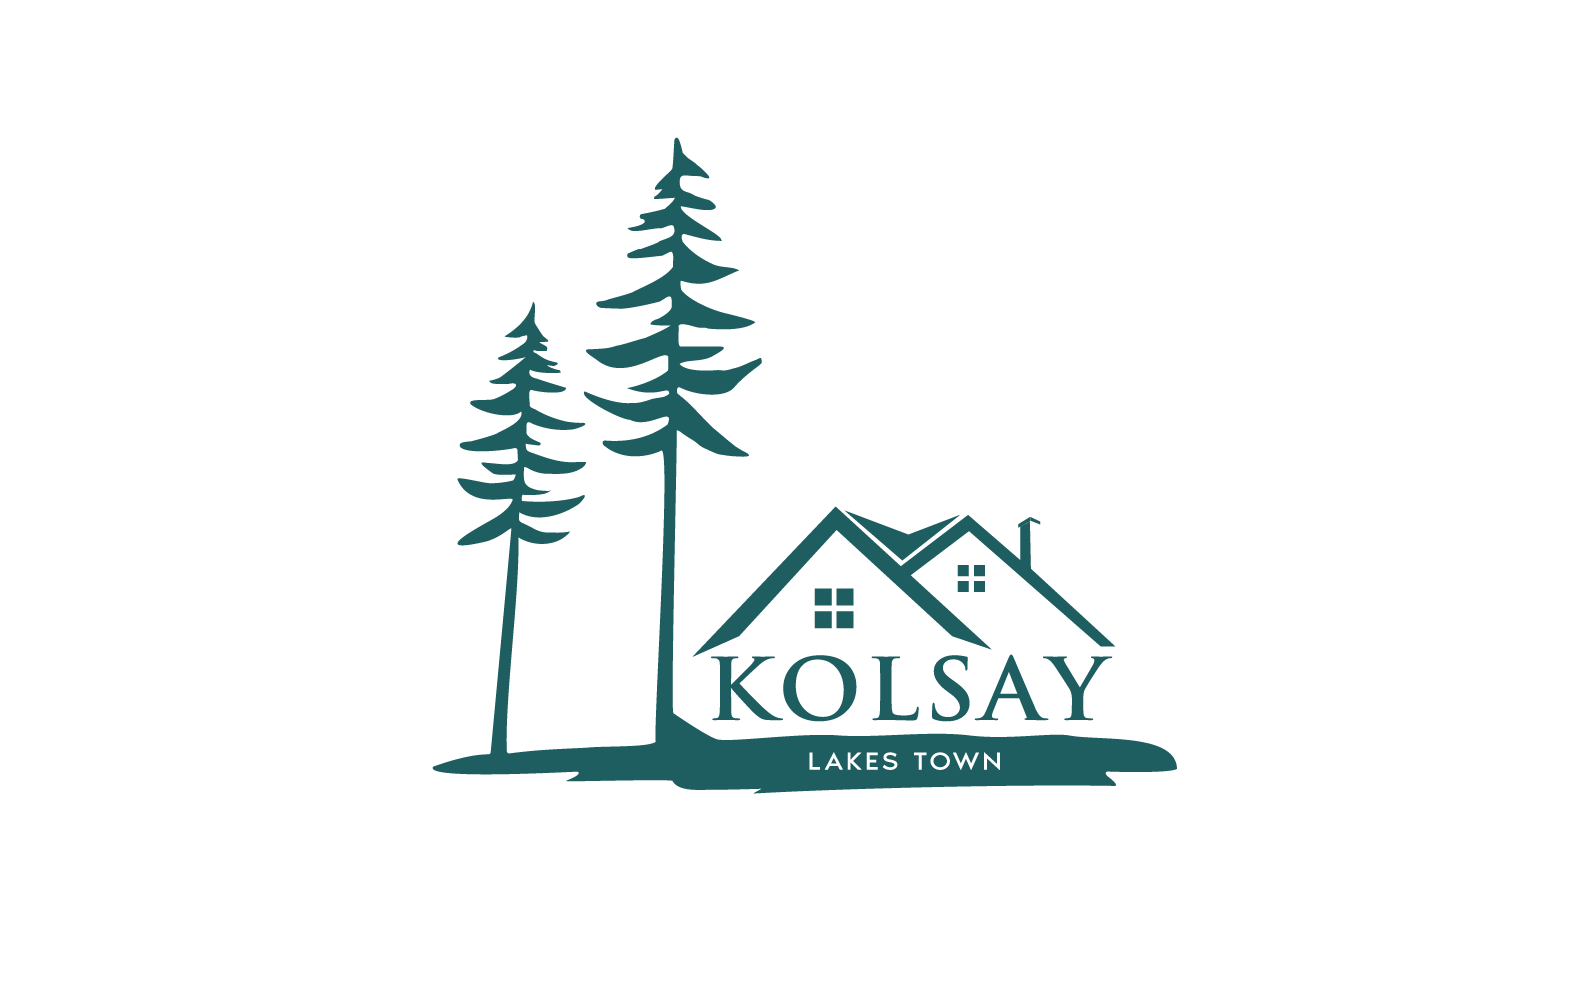 Kolsay Lakes Town